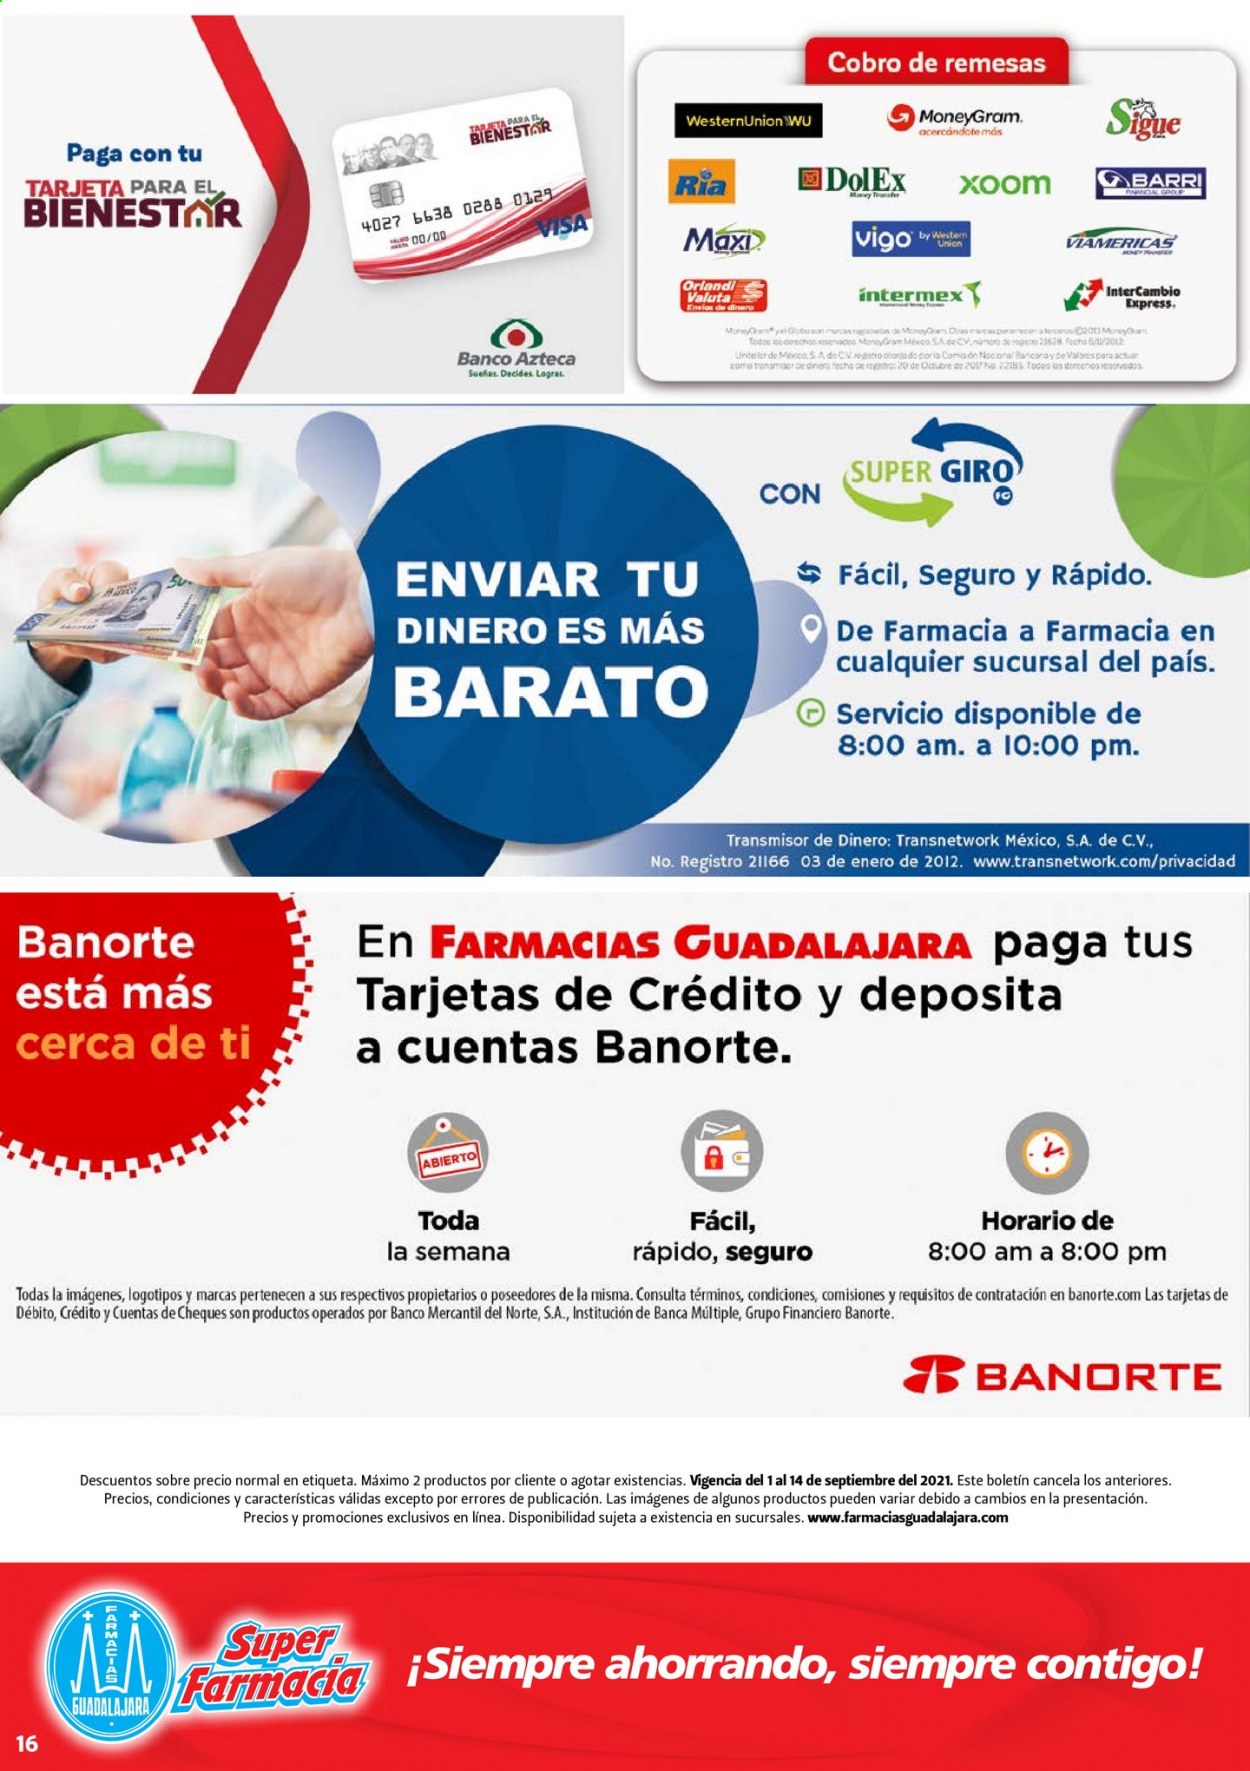 Catálogo Farmacias Guadalajara - 1.9.2021 - 14.9.2021.